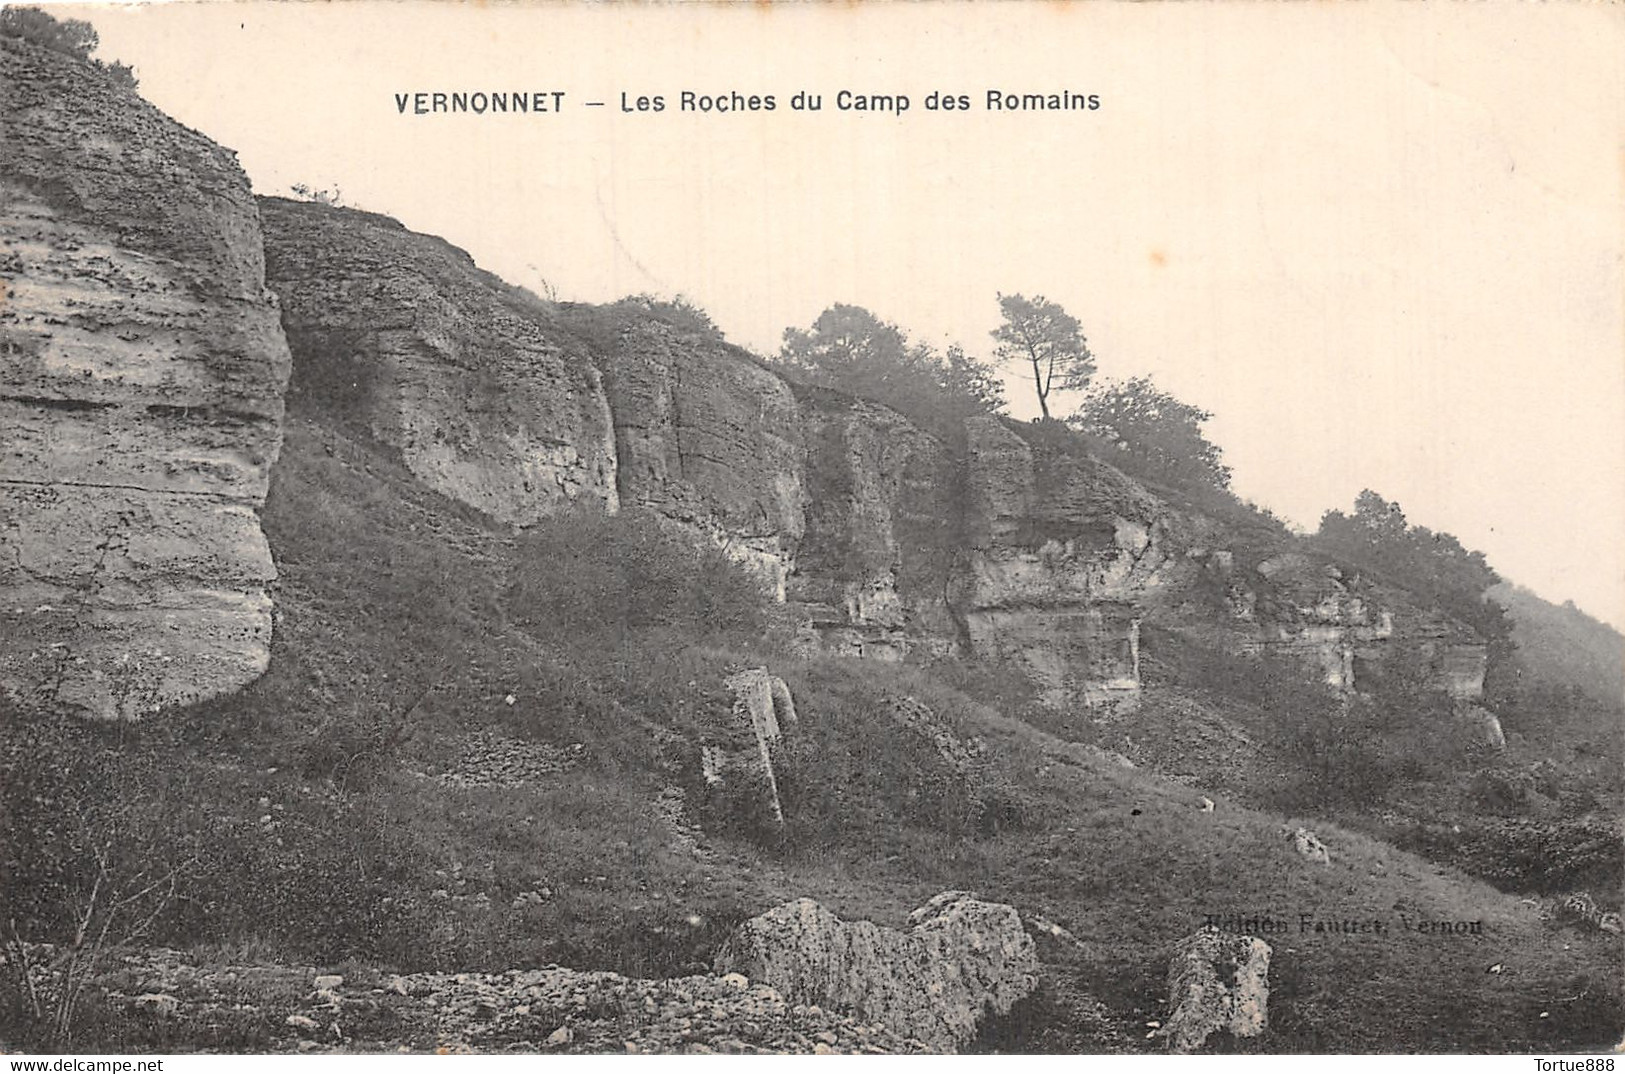 27  VERNONNET CAMP DES ROMAINS  42-1335 - Haute-Normandie